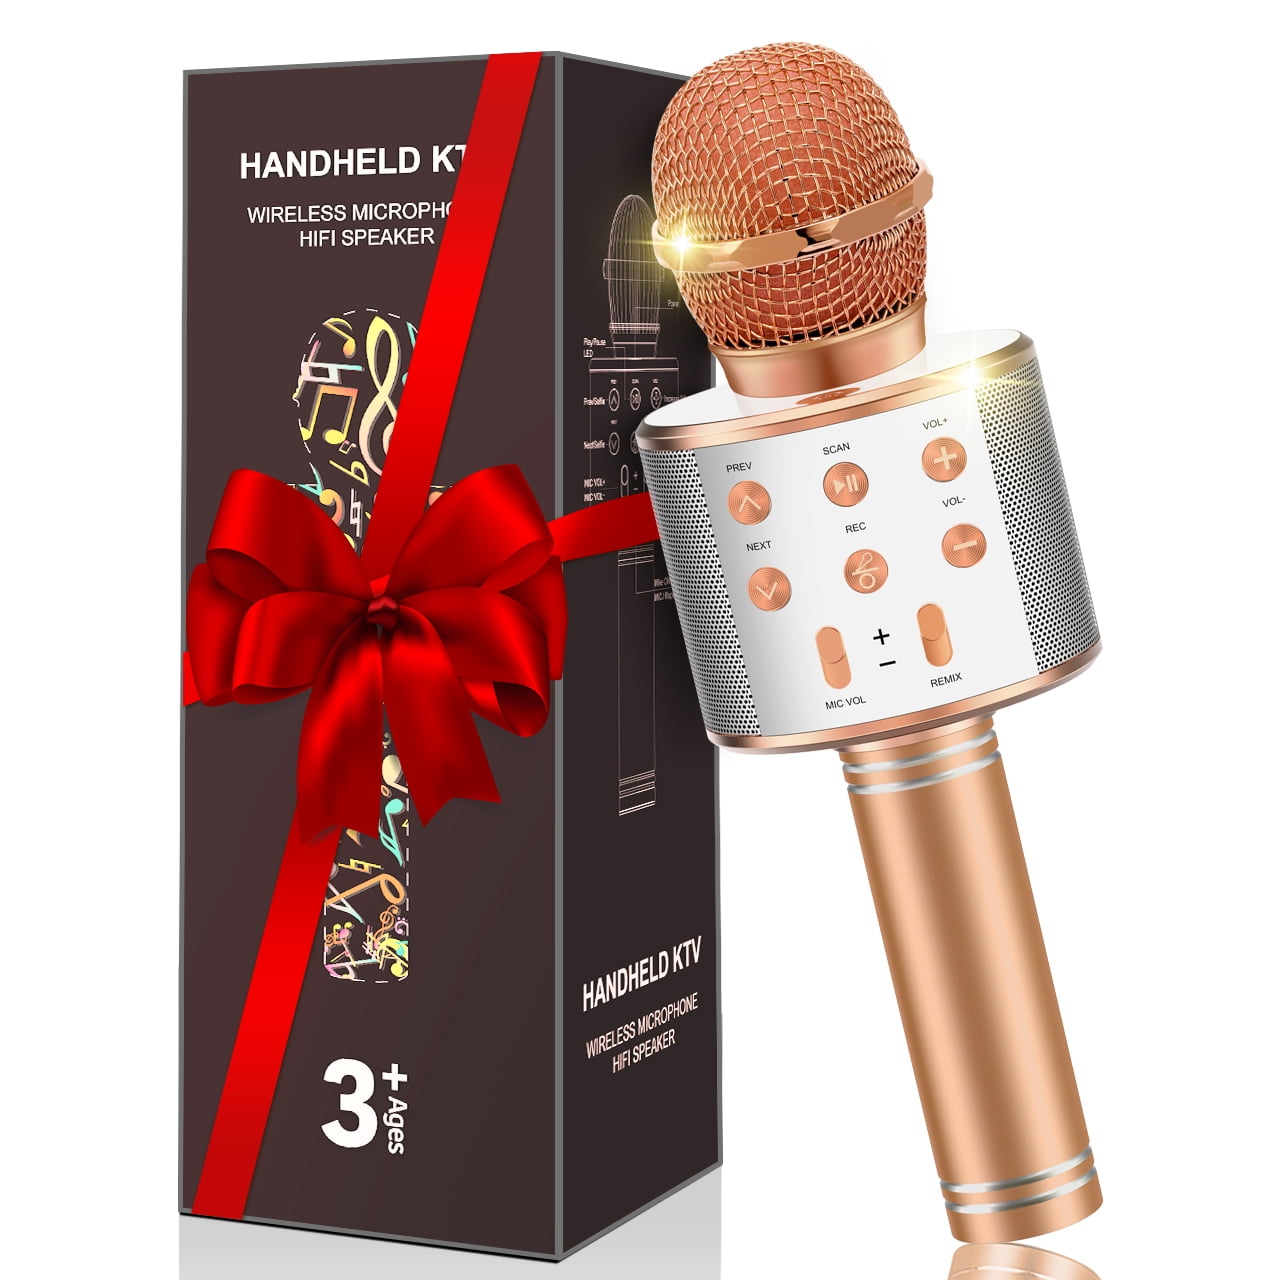  Gifts for Girls 3-12 Year Old: Kids Wireless Karaoke